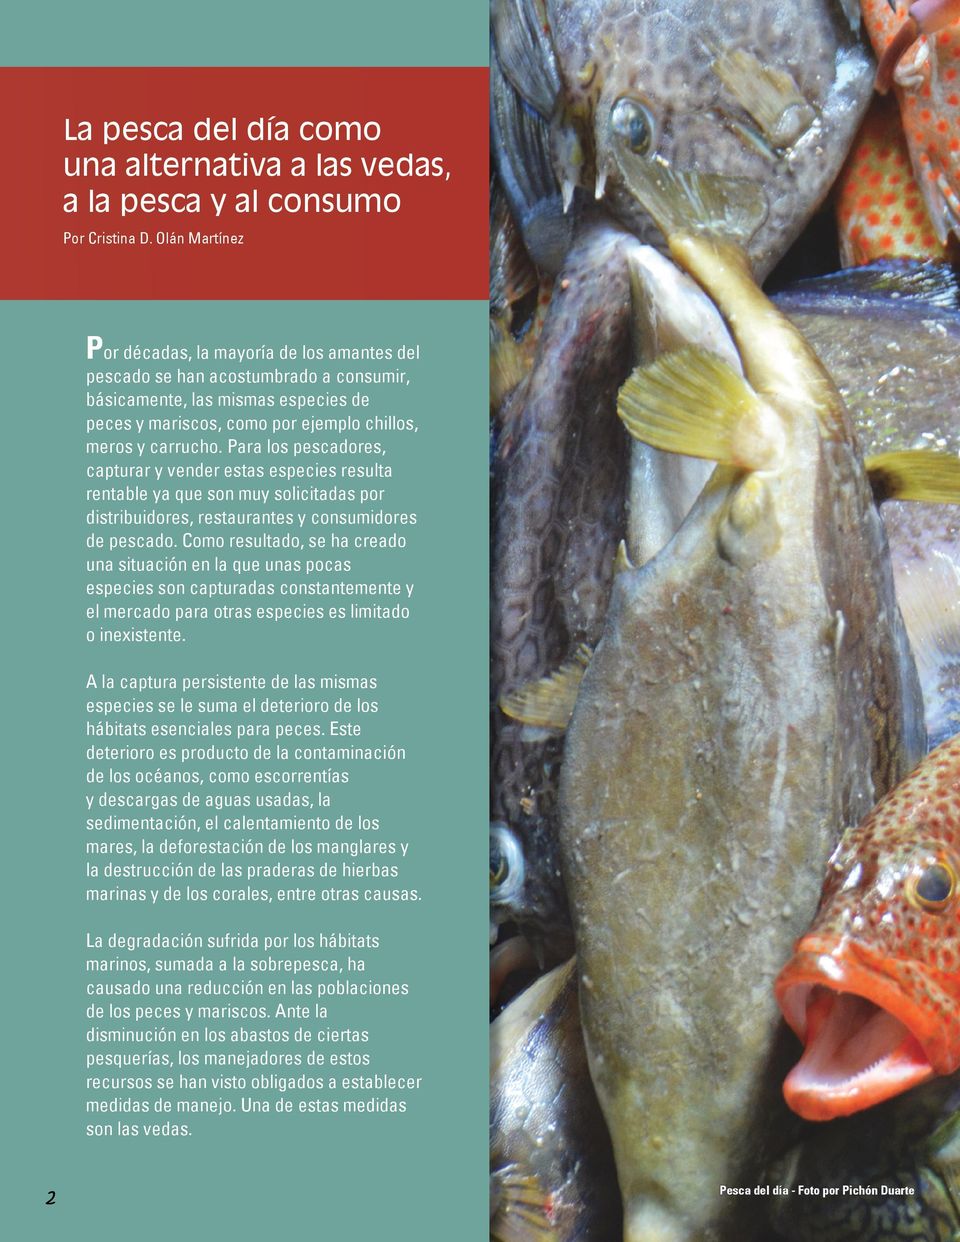 Para los pescadores, capturar y vender estas especies resulta rentable ya que son muy solicitadas por distribuidores, restaurantes y consumidores de pescado.